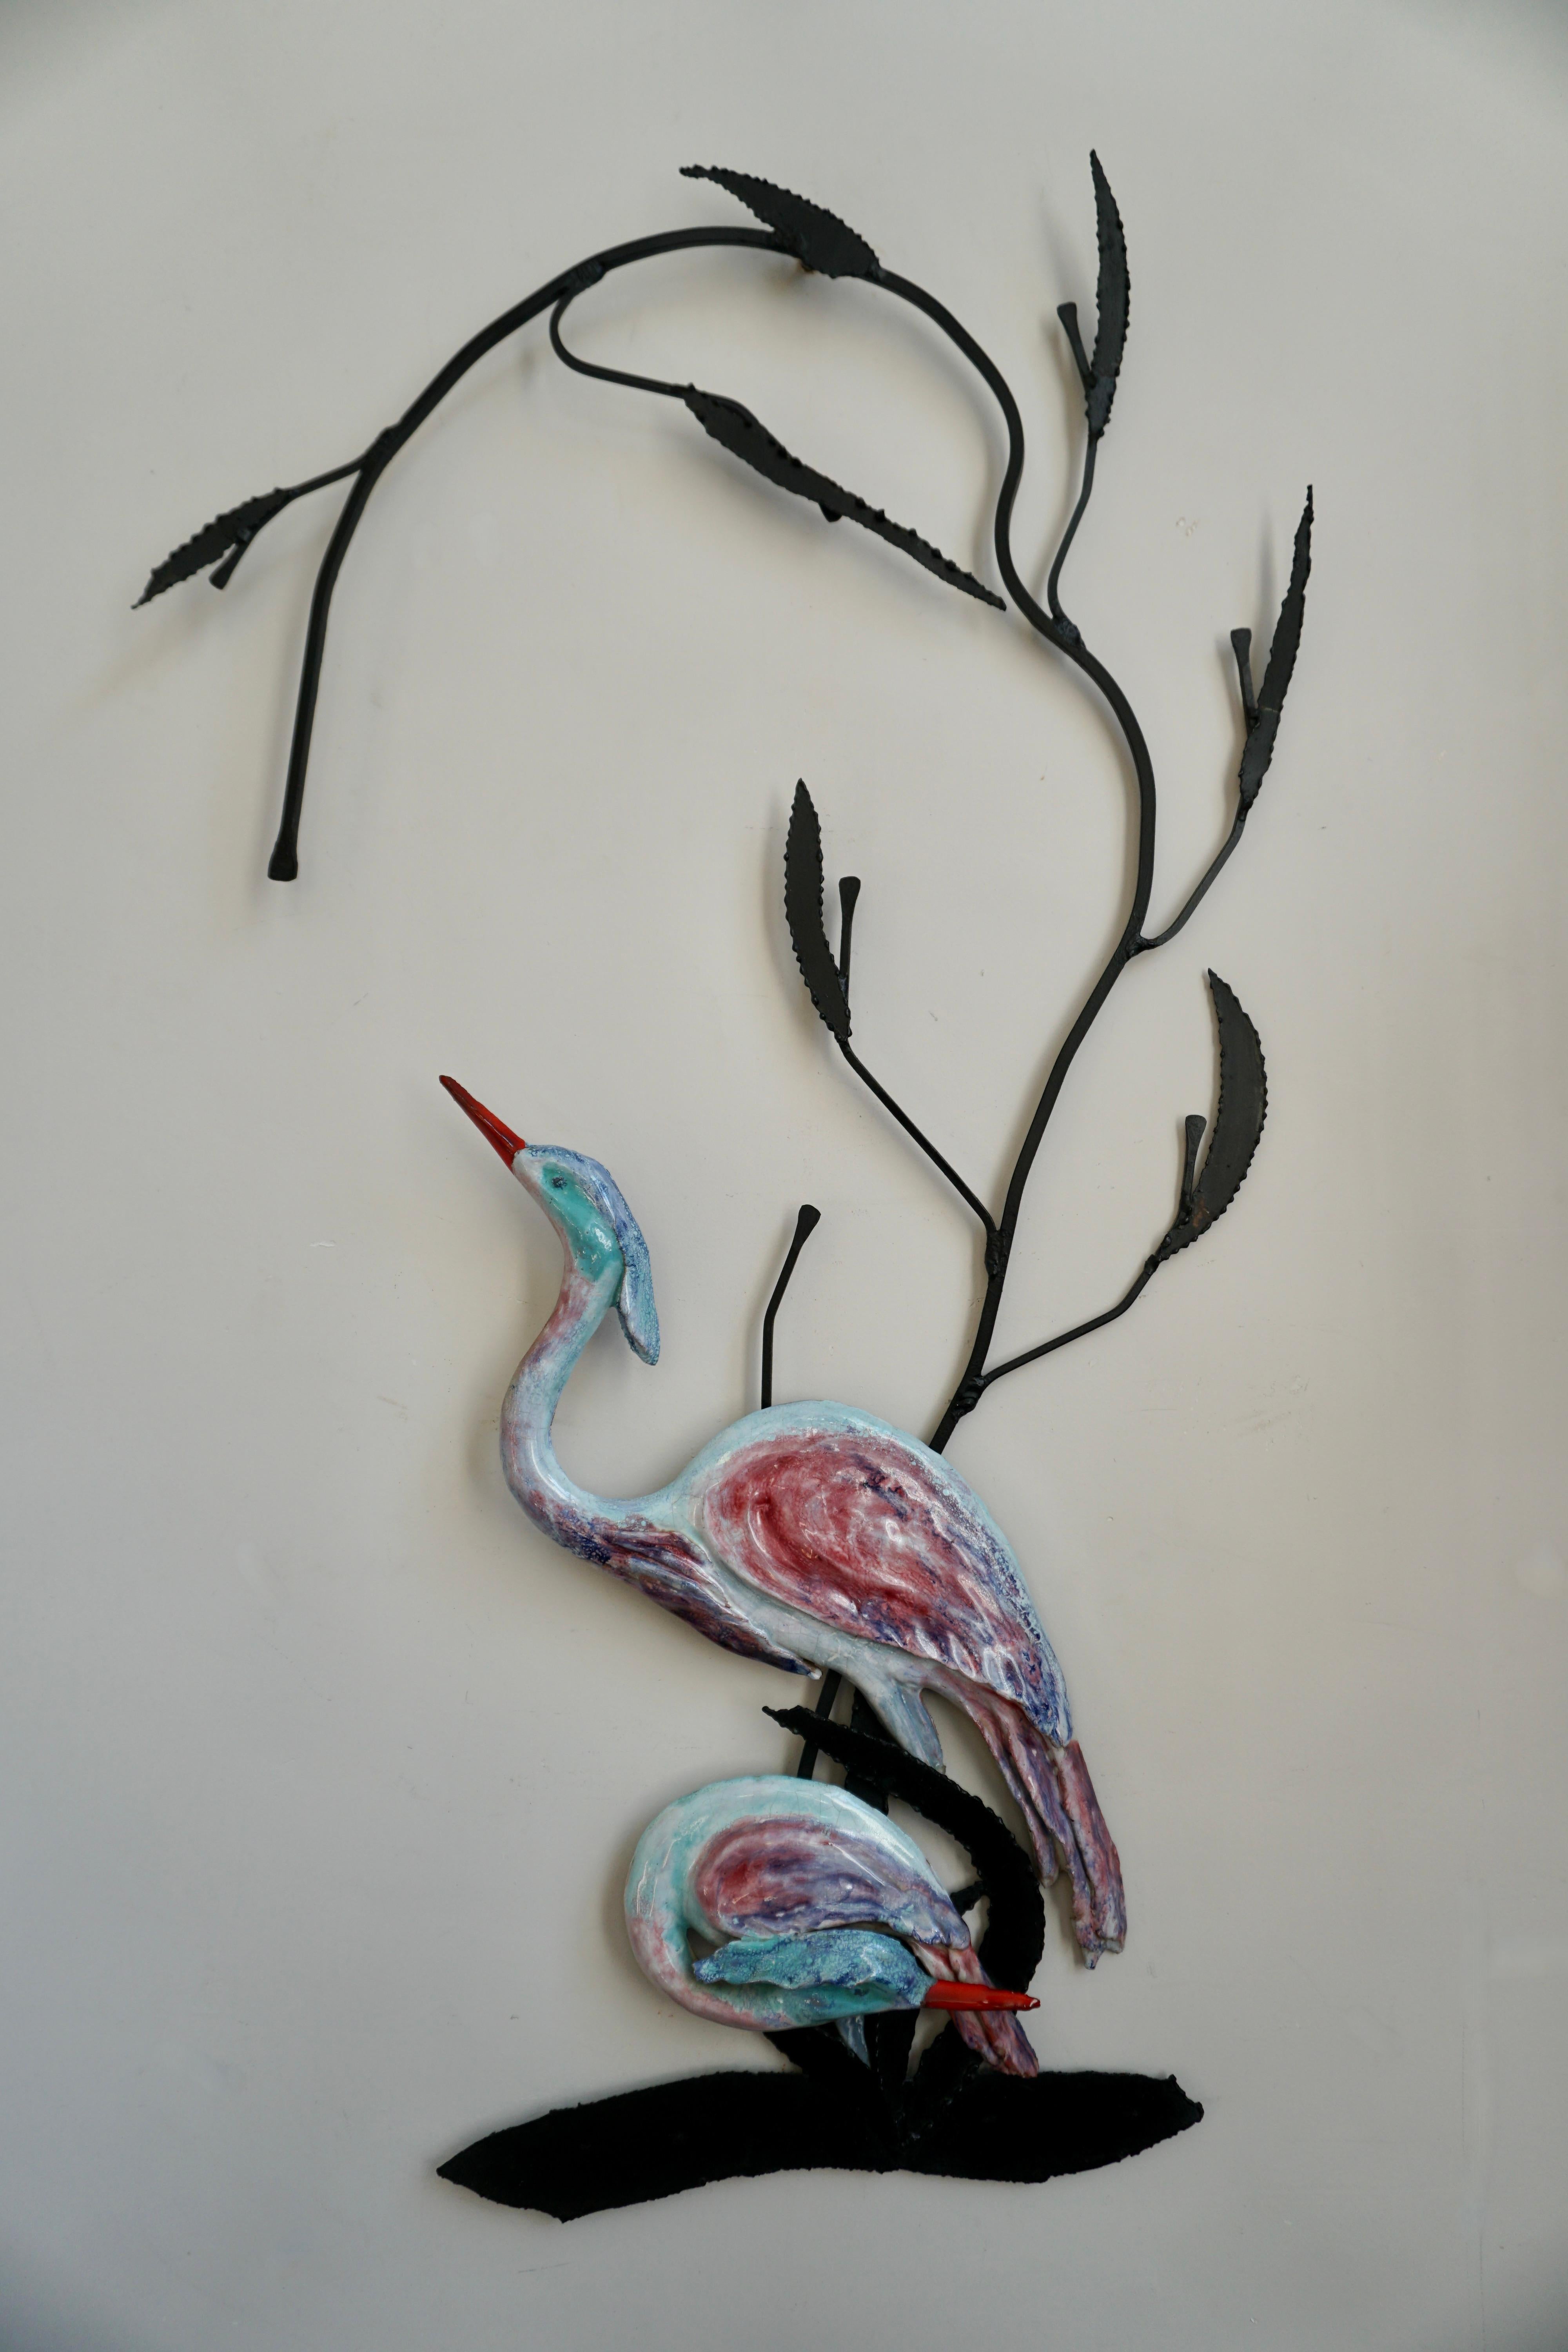 Reiher Vögel Wand Kunst Skulptur in Keramik.

Diese friedliche Szene mit zwei eleganten Reihern, die anmutig in einem Bach waten, bringt einen dekorativen Hauch von Mutter Natur an Ihre Wand. Gefertigt aus glasierter Keramik auf einem